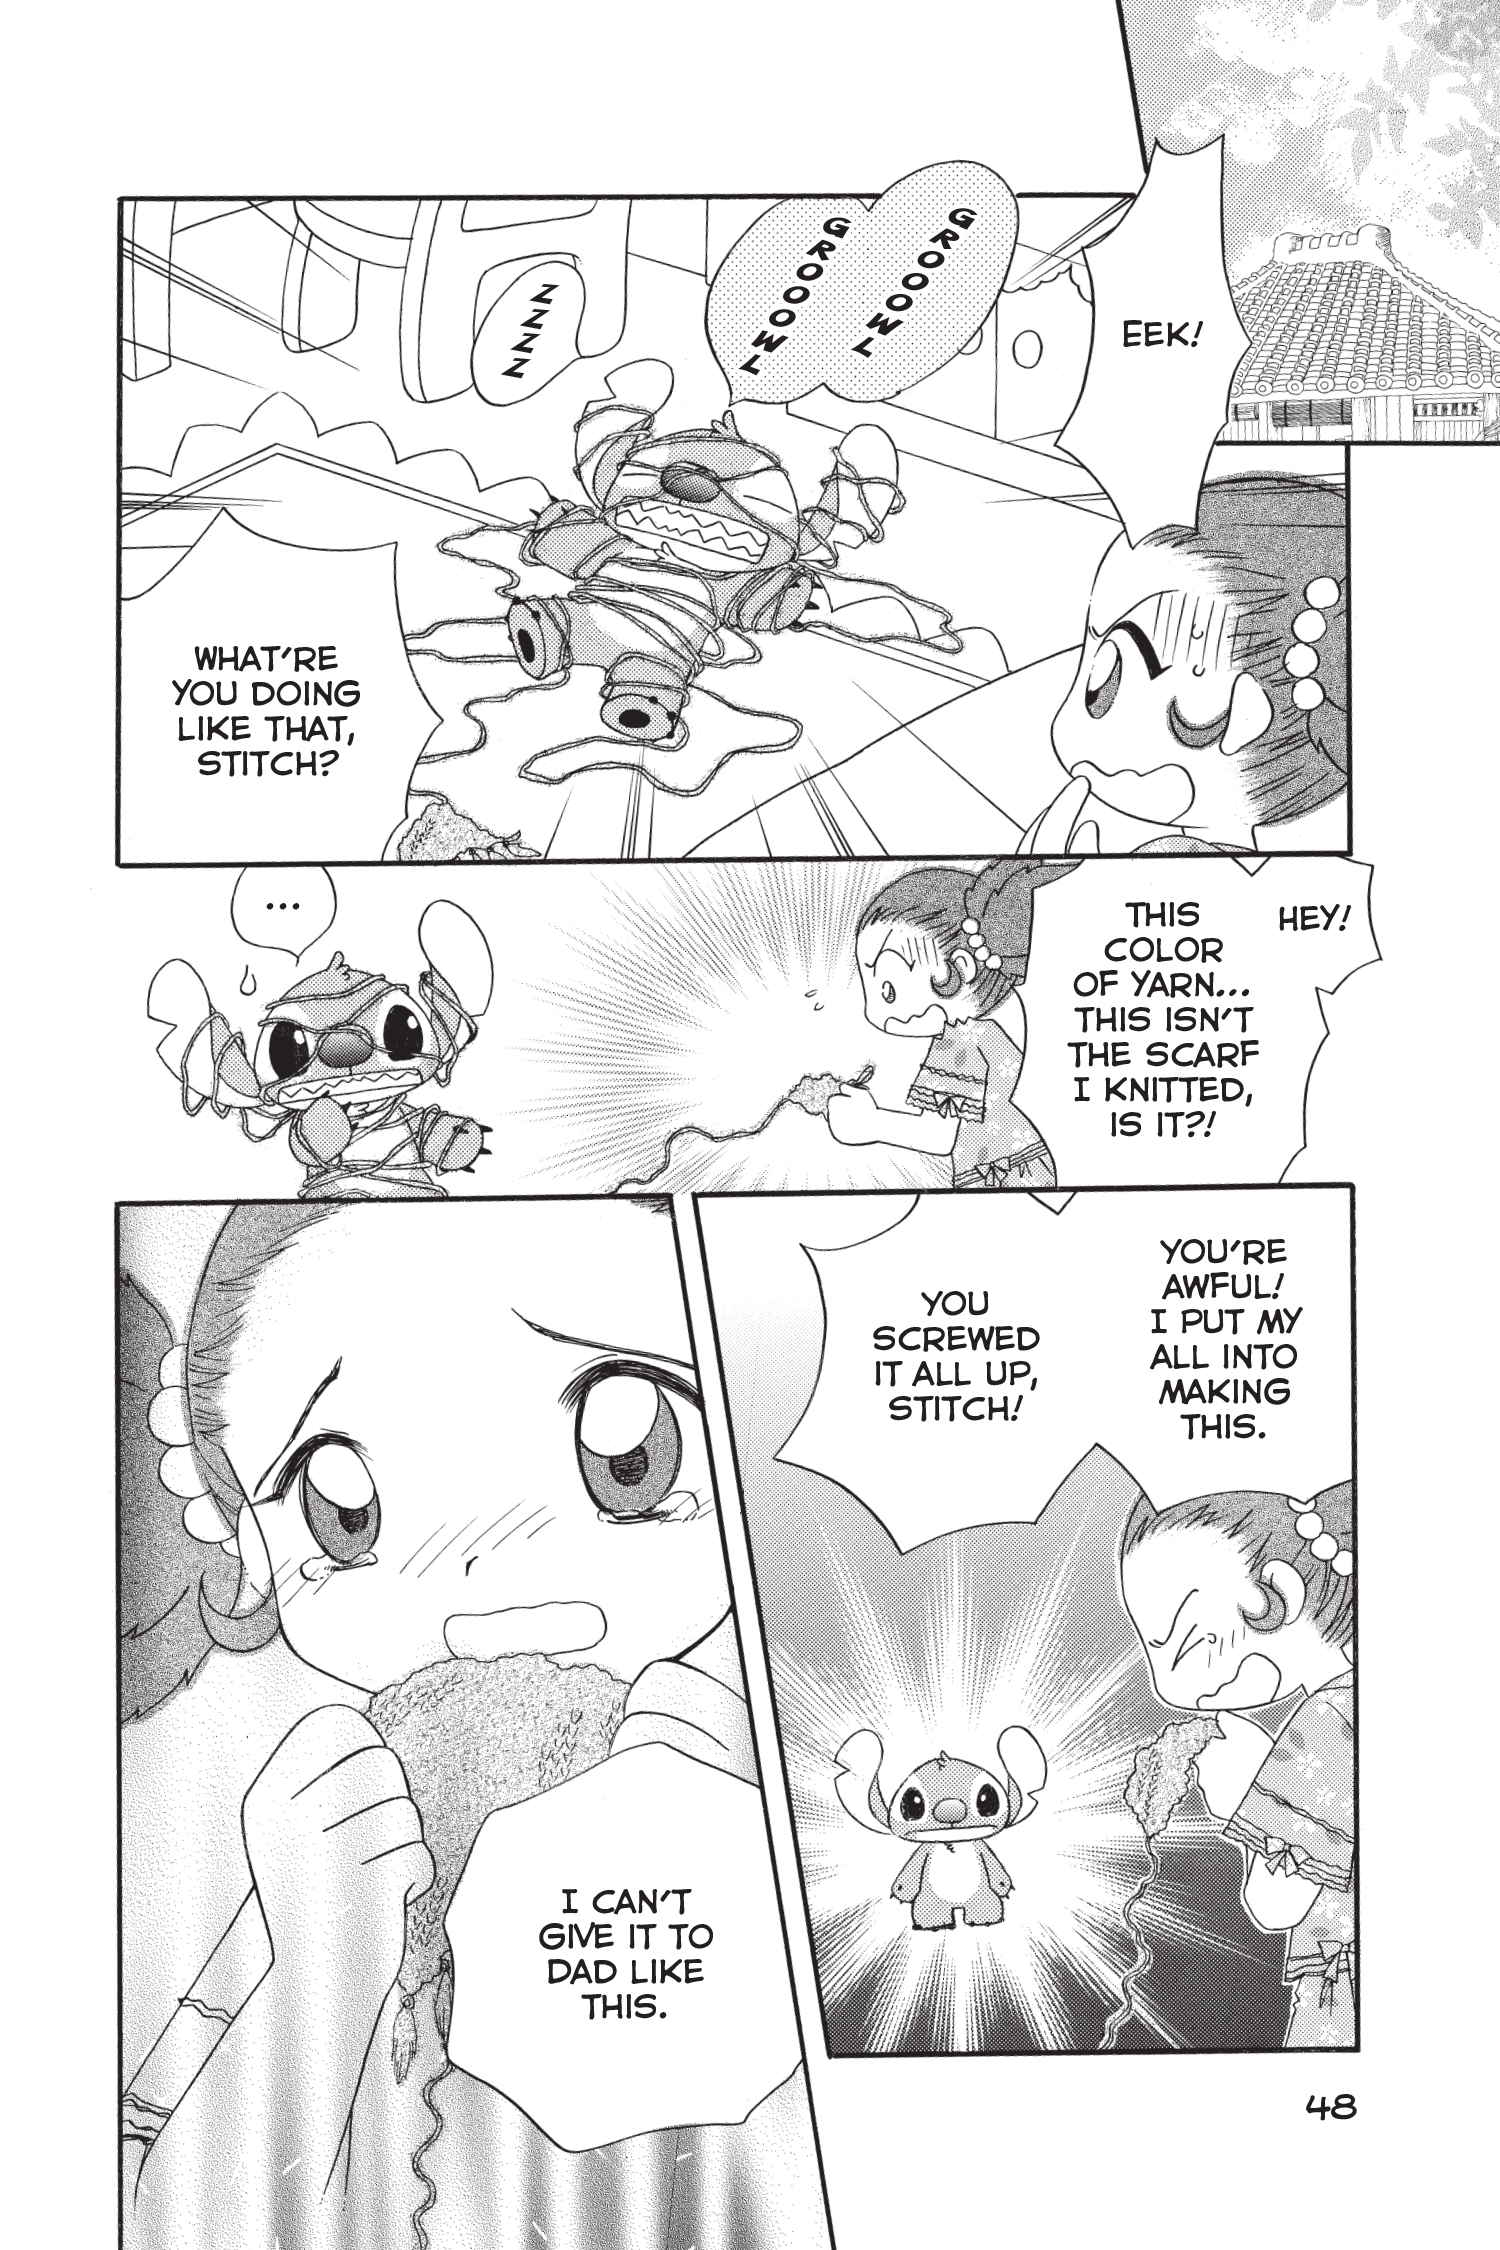 Disney Manga: Stitch! The Manga Collection: Tsukurino, Yumi